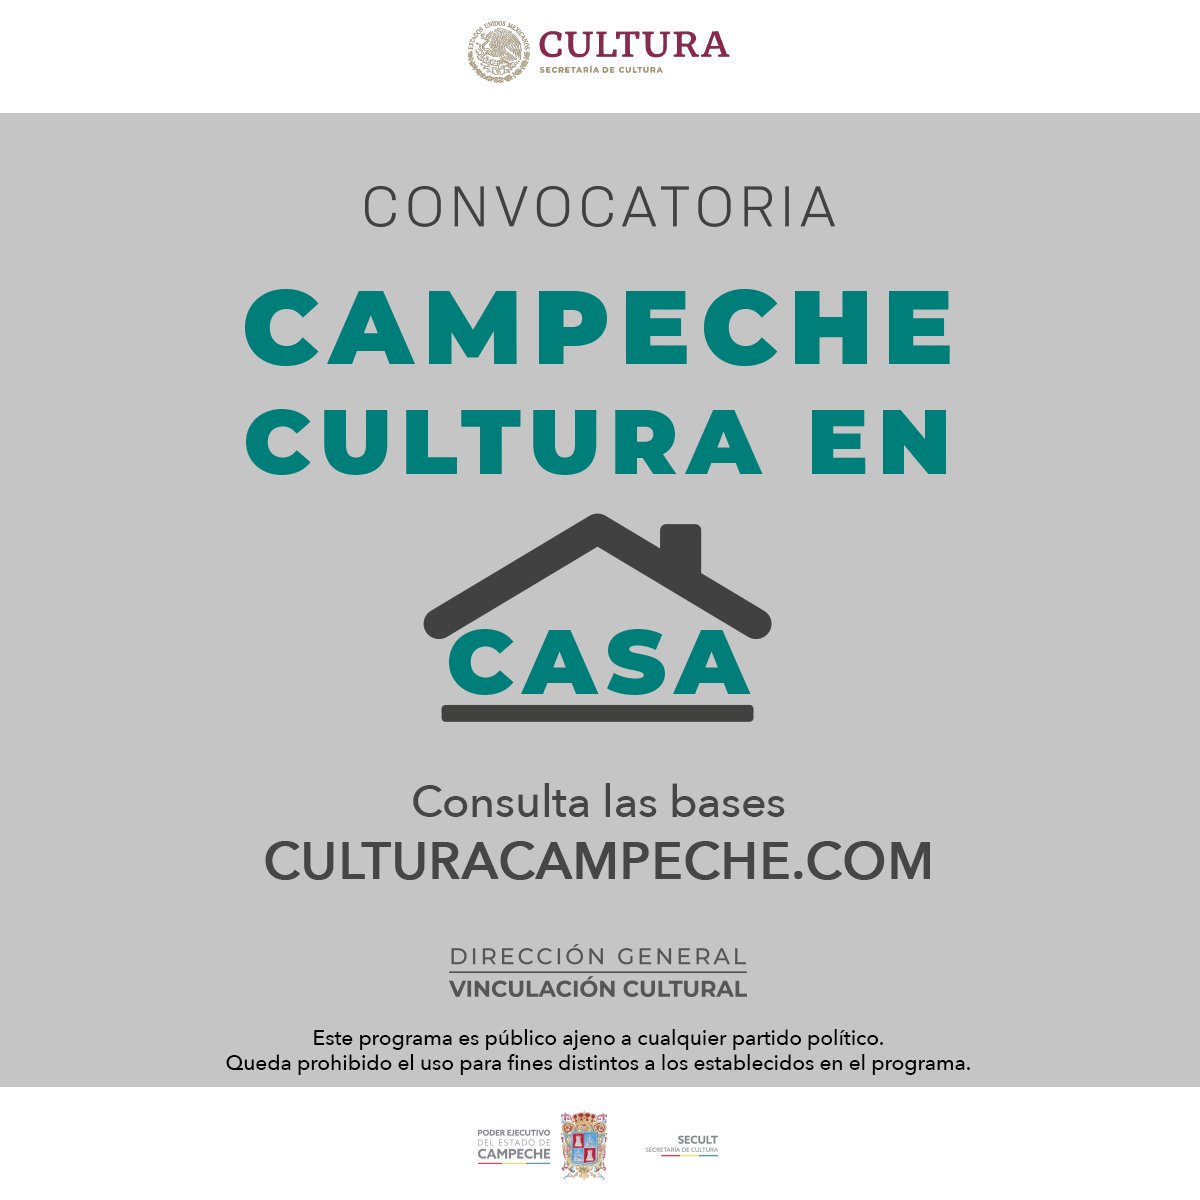 SECULT invita a participar en la convocatoria “Campeche cultura en casa”